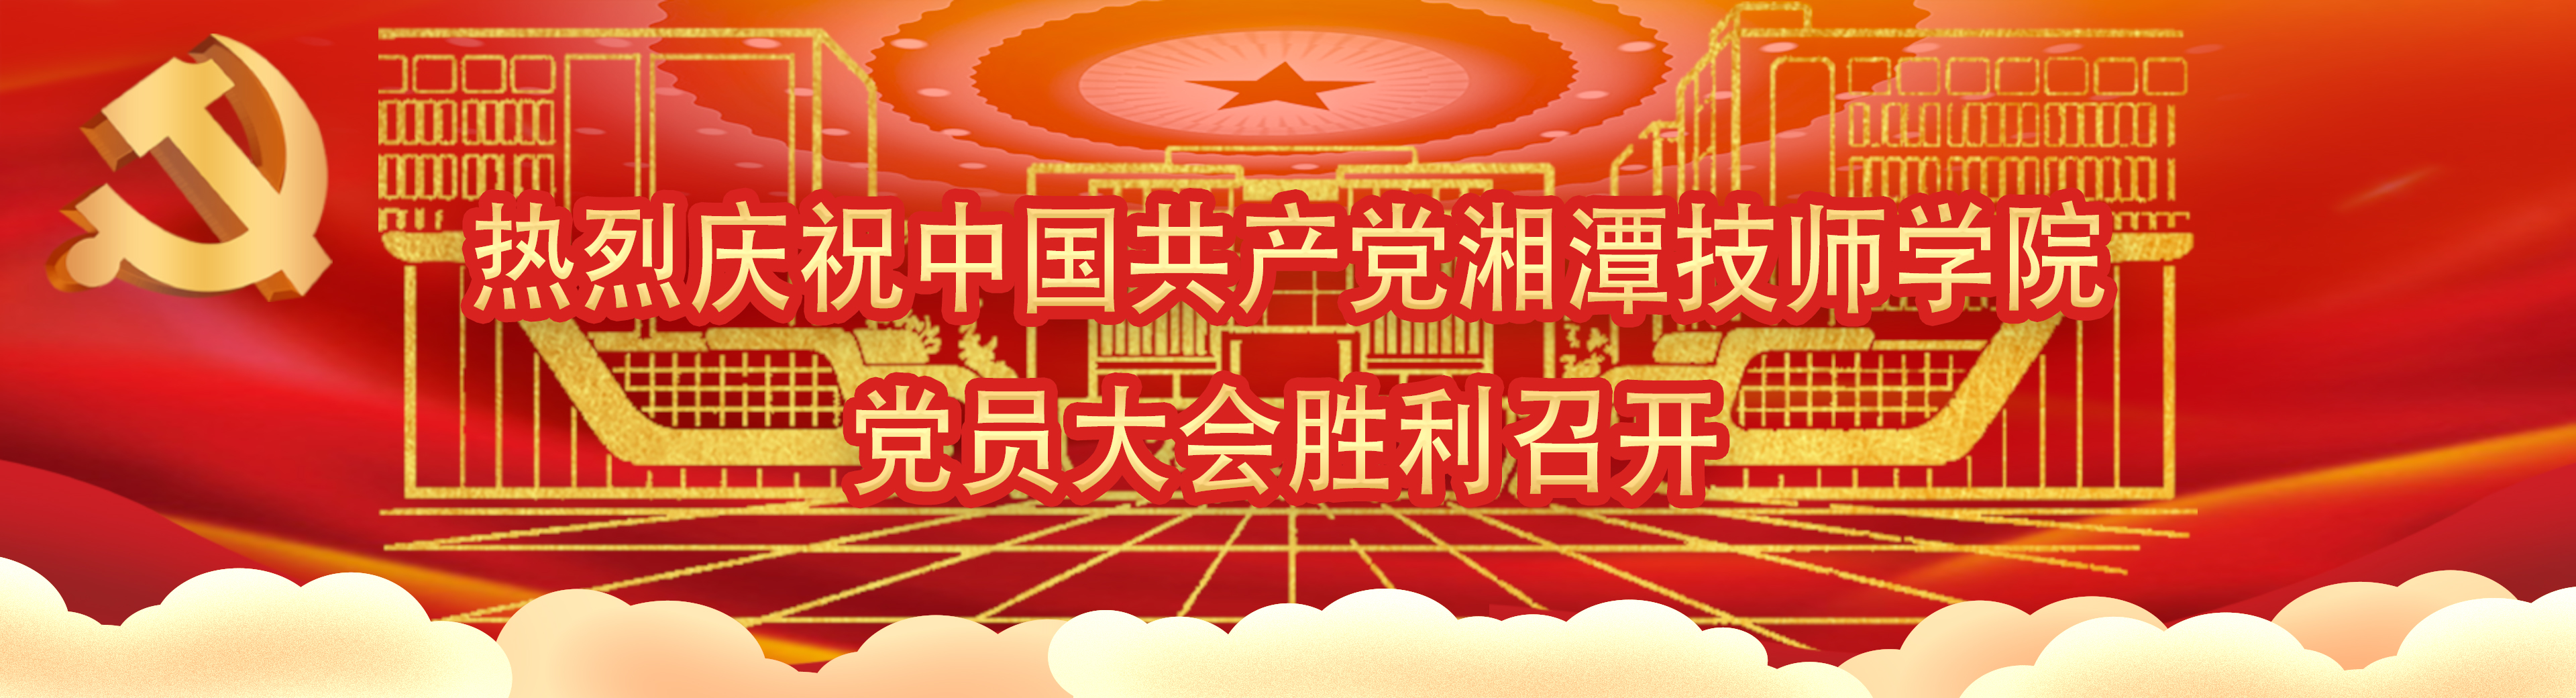 热烈庆祝中国共产党湘潭技师学院党员大会胜利召开